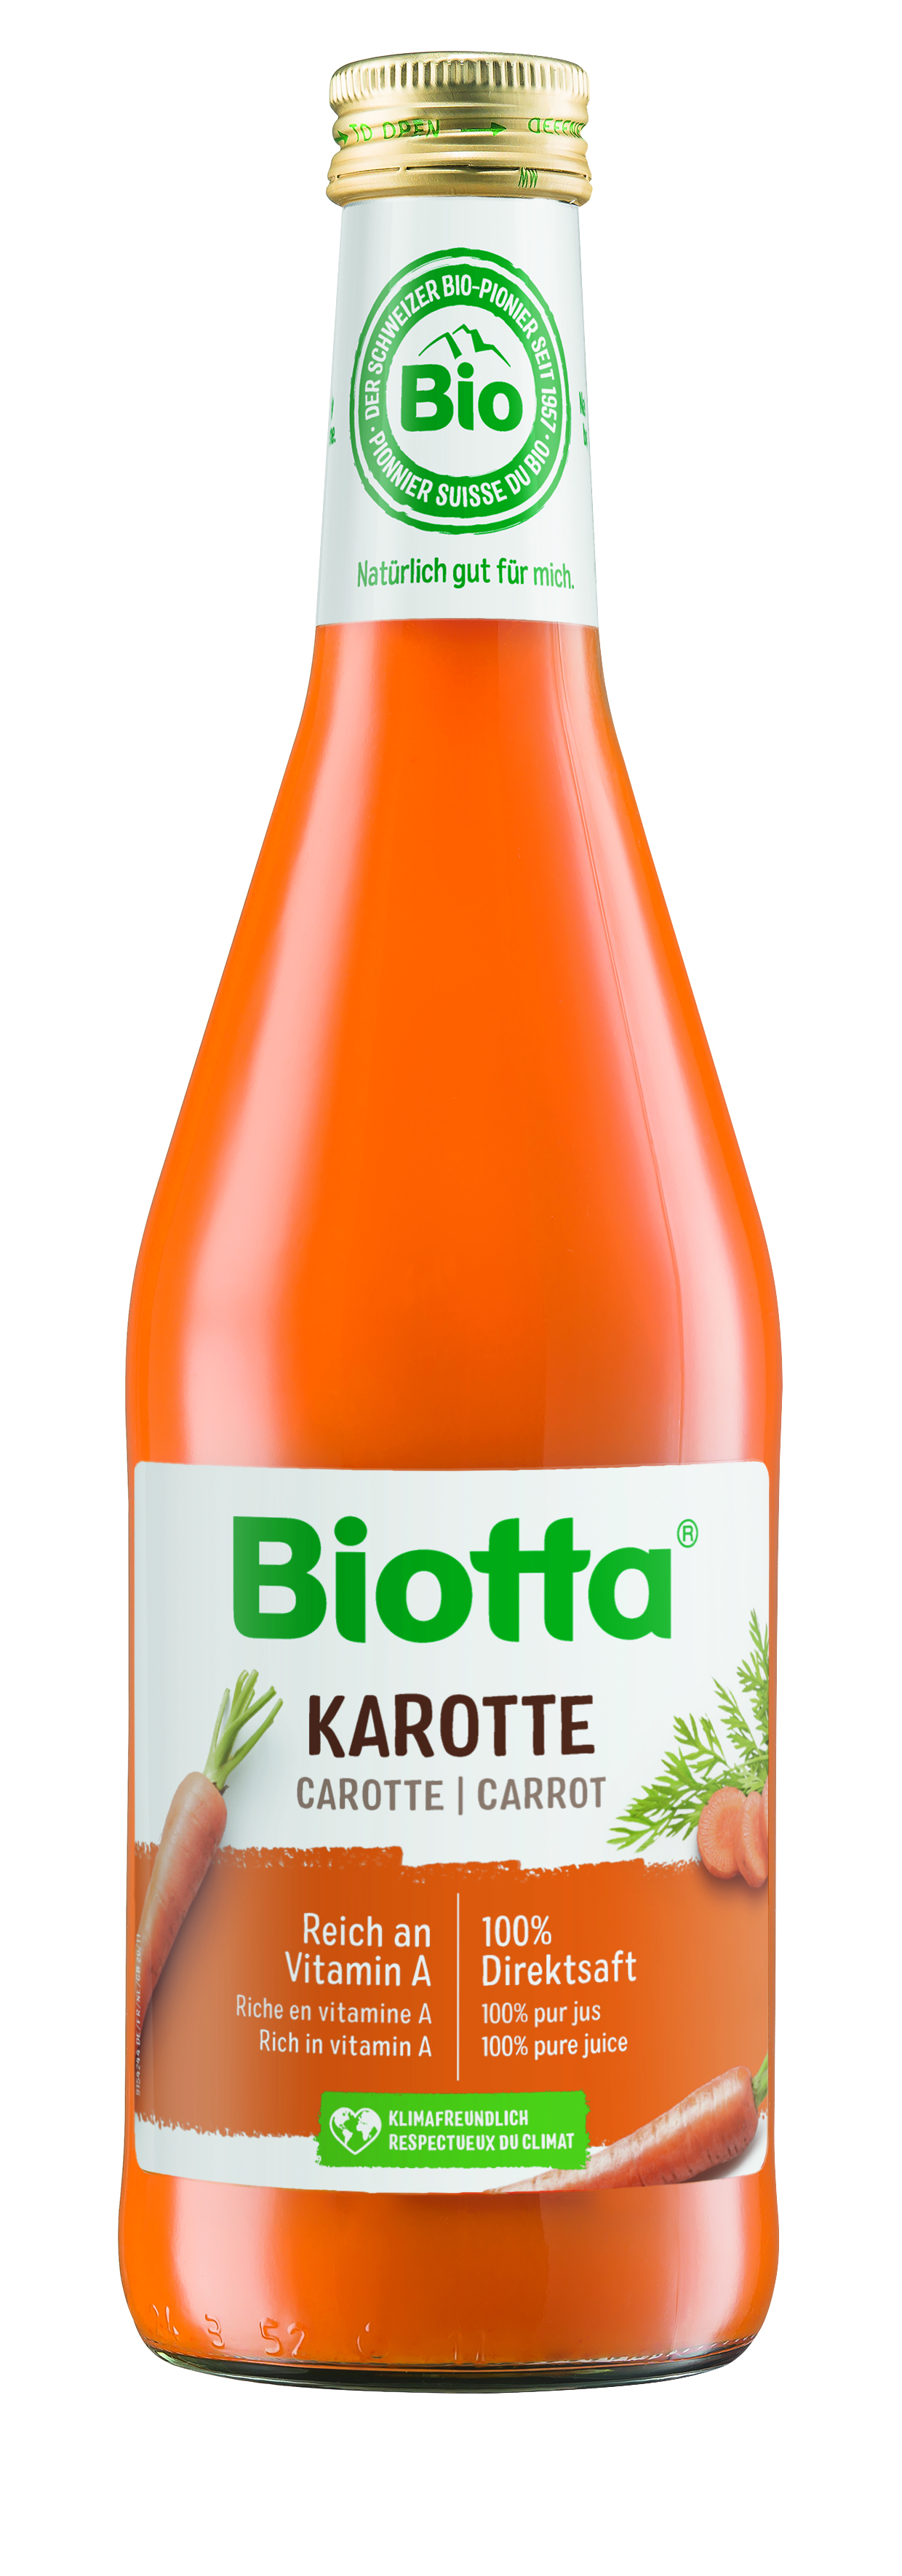 Biotta mrkvová šťava 7 kartónov - cena za 1 ks 4,047€ s DPH